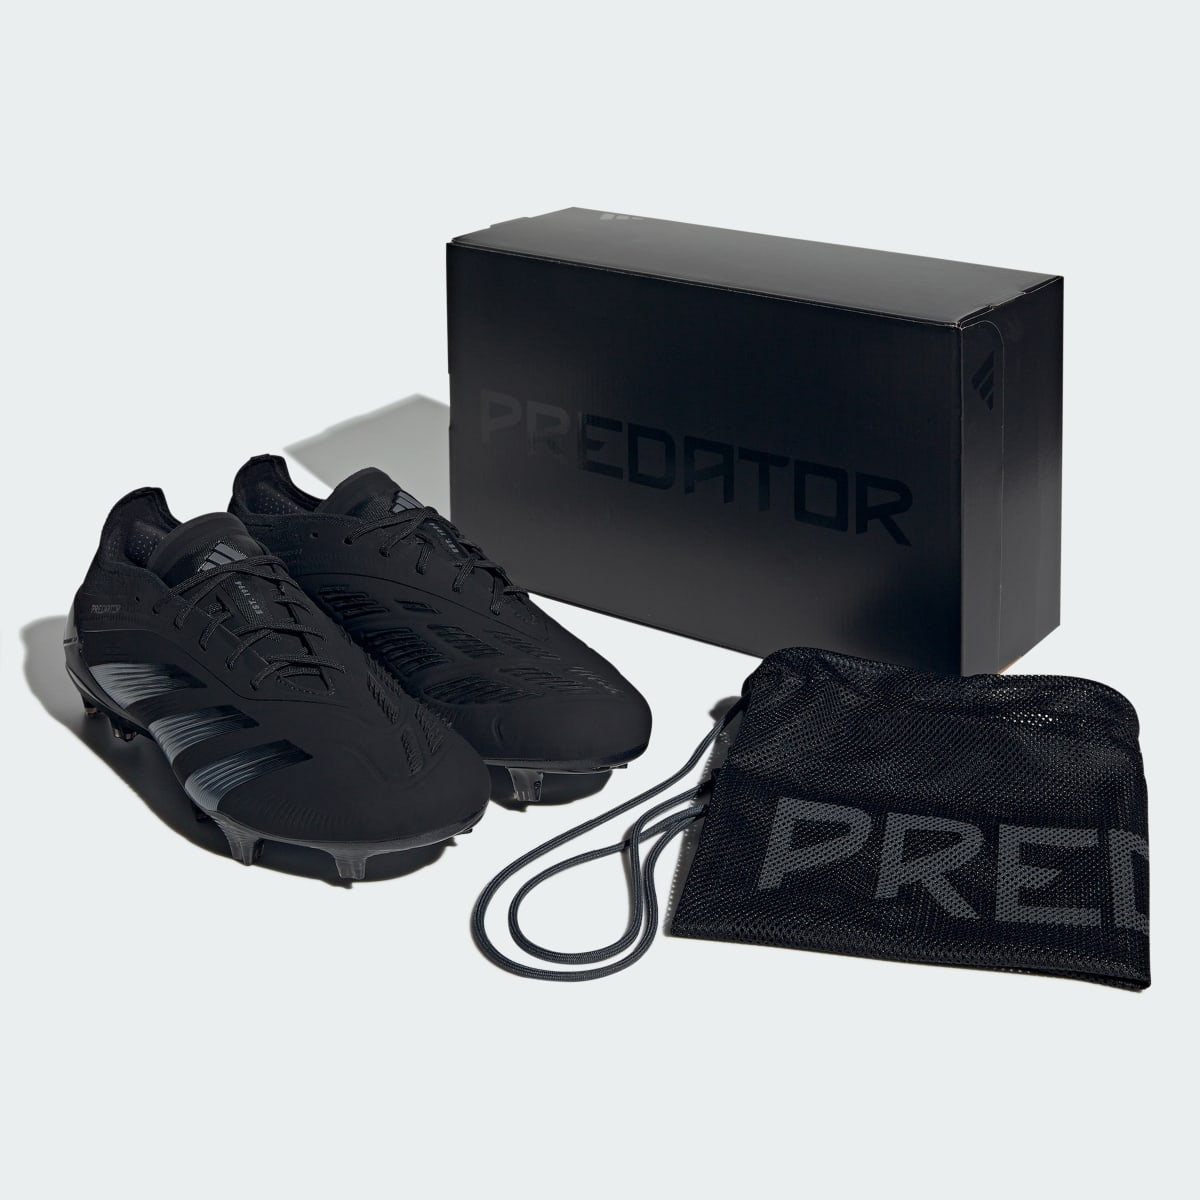 Adidas Buty Predator Elite FG Football. 10